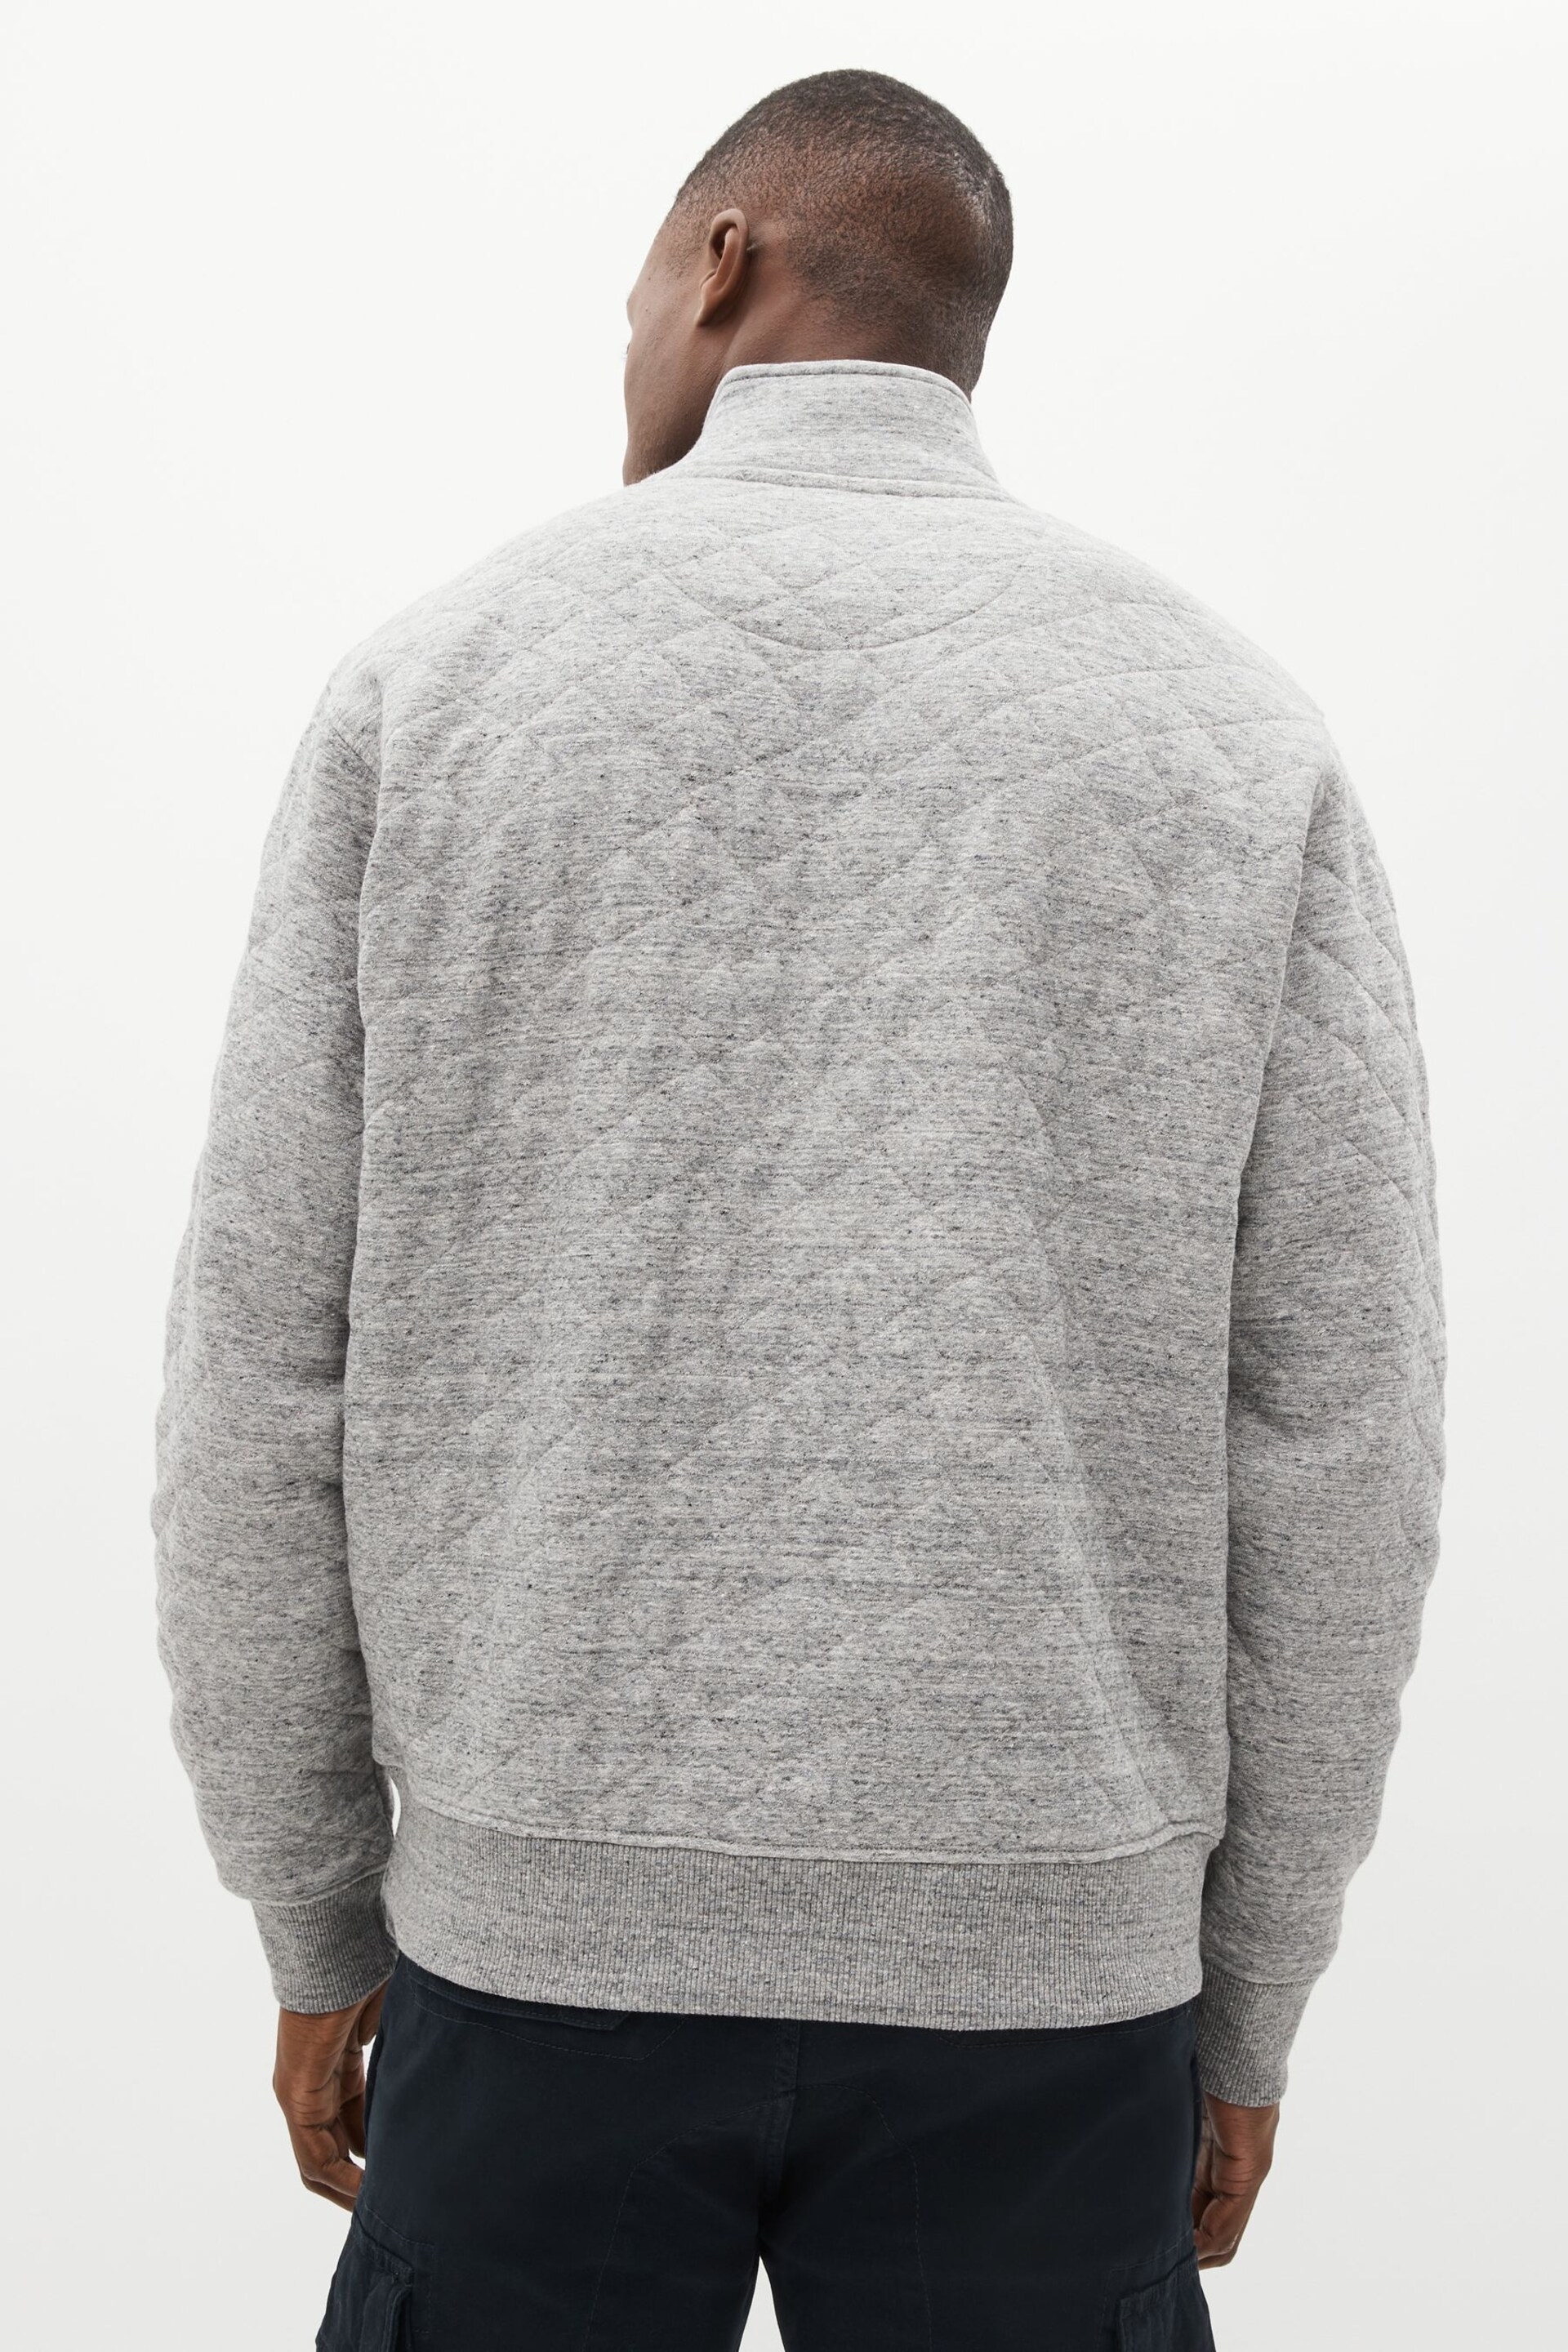 Grey Quilted Sweatshirt Hoodie - Image 3 of 8